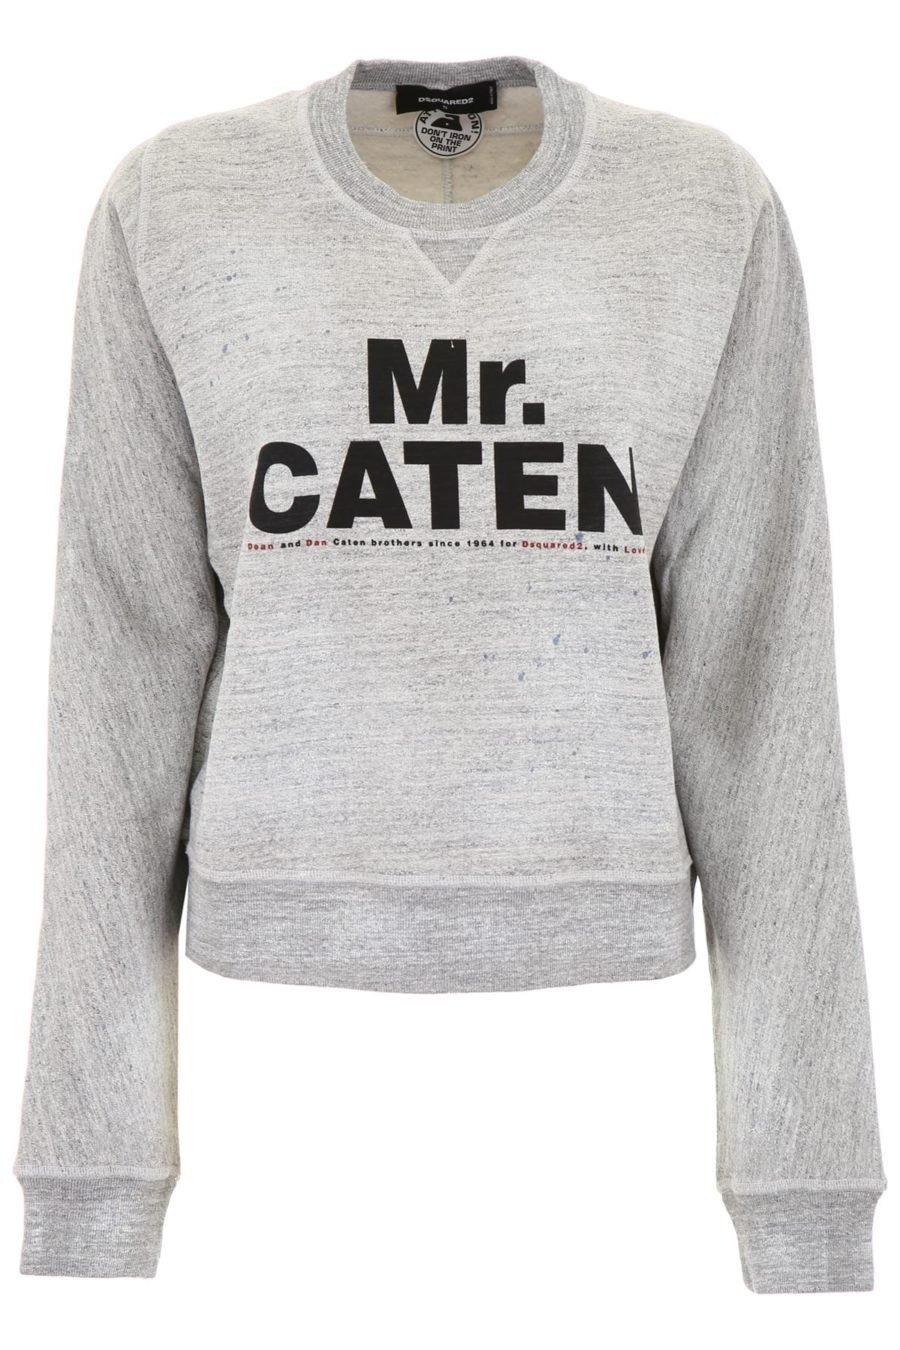 Sweatshirt Dsquared2 Mr. Caten Cinzento claro - S75GU0164S25148gex 20